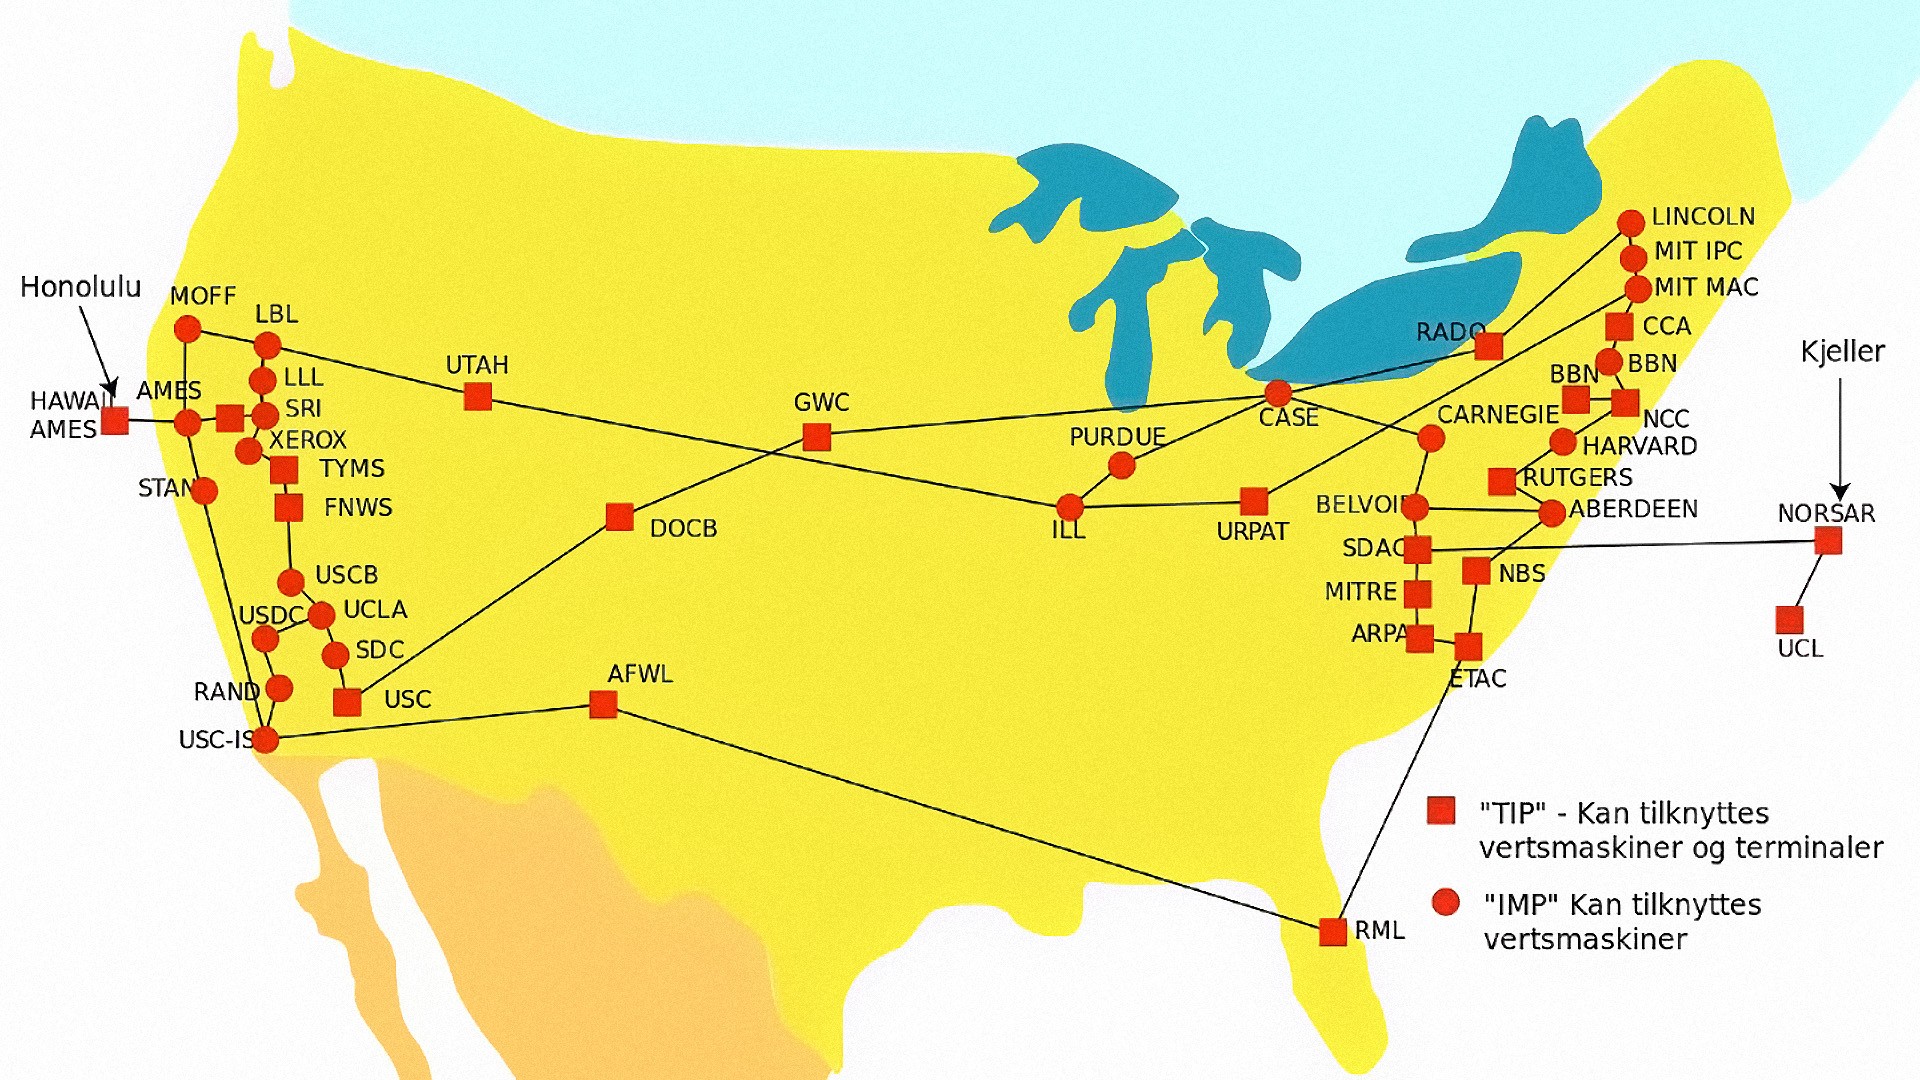 خريطة شبكة ARPANET التي اسست عام 1969